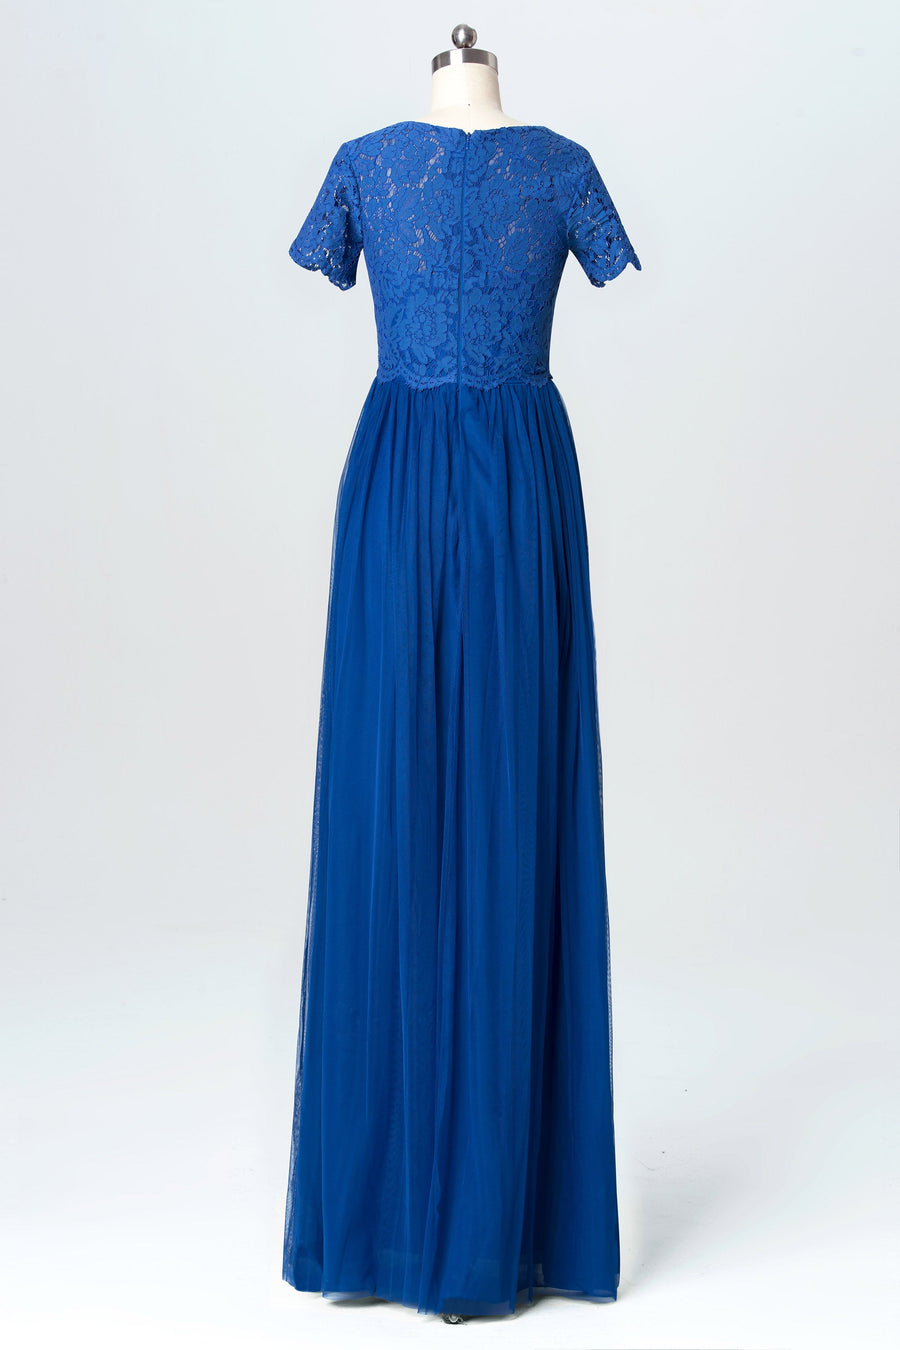 Lace Scoop Neck Cap Sleeve Bridesmaid Dress| Plus Size | 60+ Colors